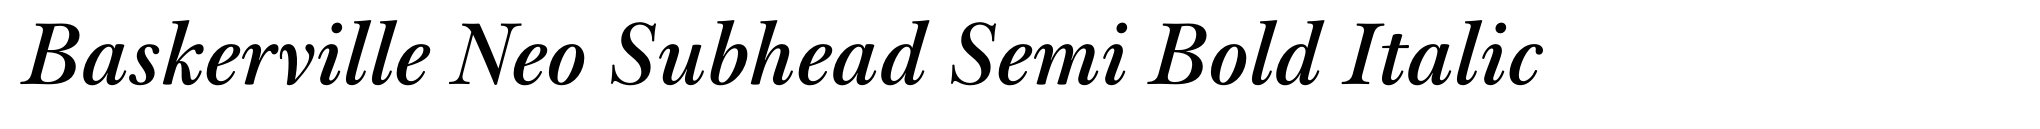 Baskerville Neo Subhead Semi Bold Italic image